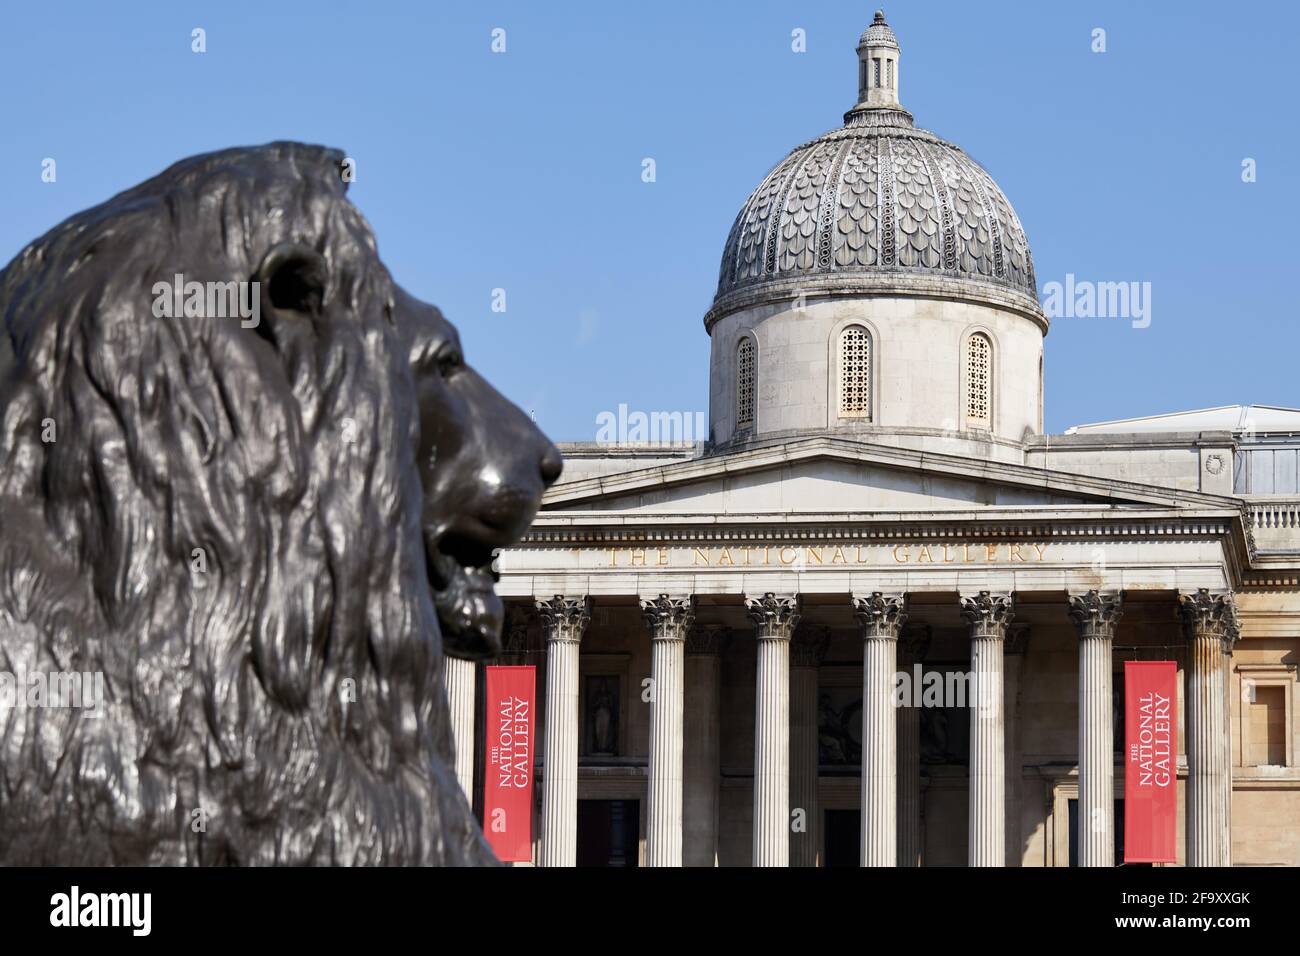 Londres, Reino Unido - 20 de abril de 2021: Fachada del museo de arte de la Galería Nacional en Trafalgar Square, representado detrás de uno de los leones de bronce que conforman la zona. Foto de stock